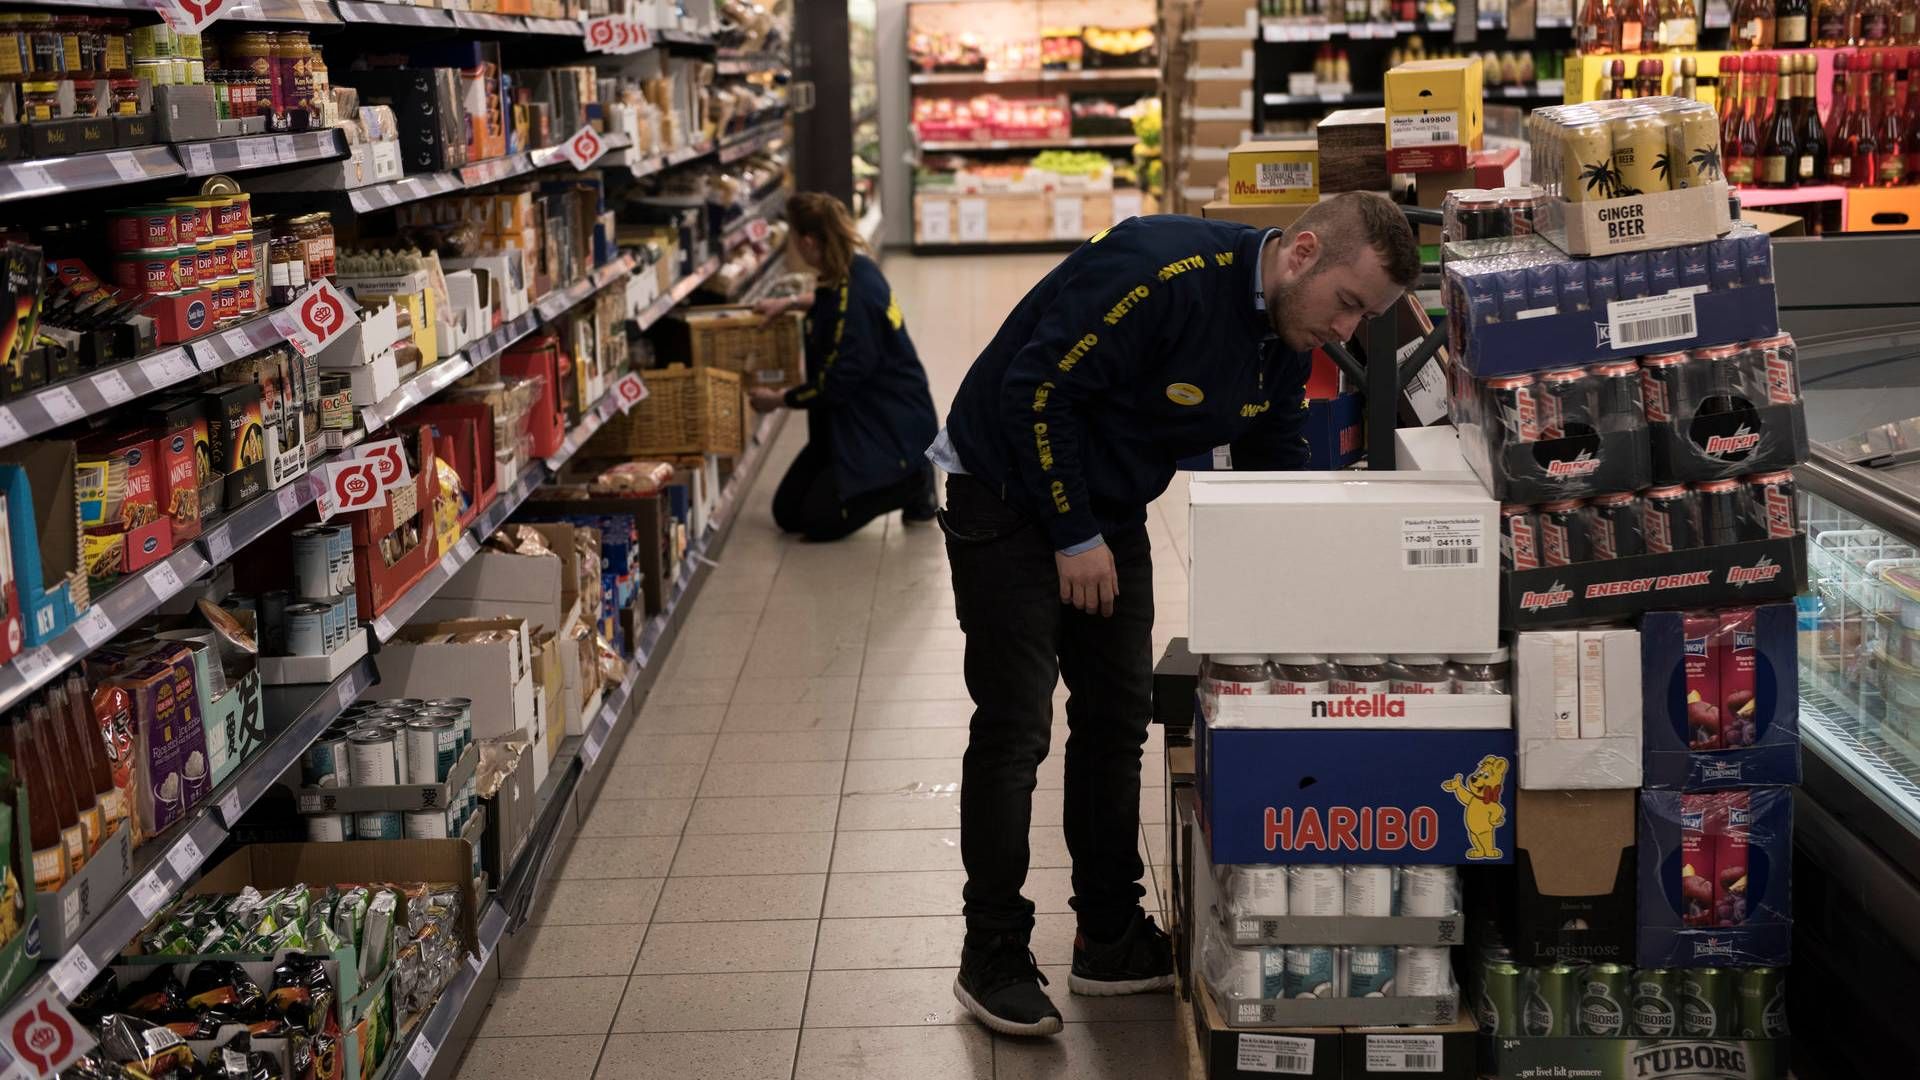 Mens priserne er steget i discountbutikker og supermarkeder er forretningernes indtjening faldet, skriver Finans. | Foto: Laura Bisgaard Krogh/ritzau Scanpix.